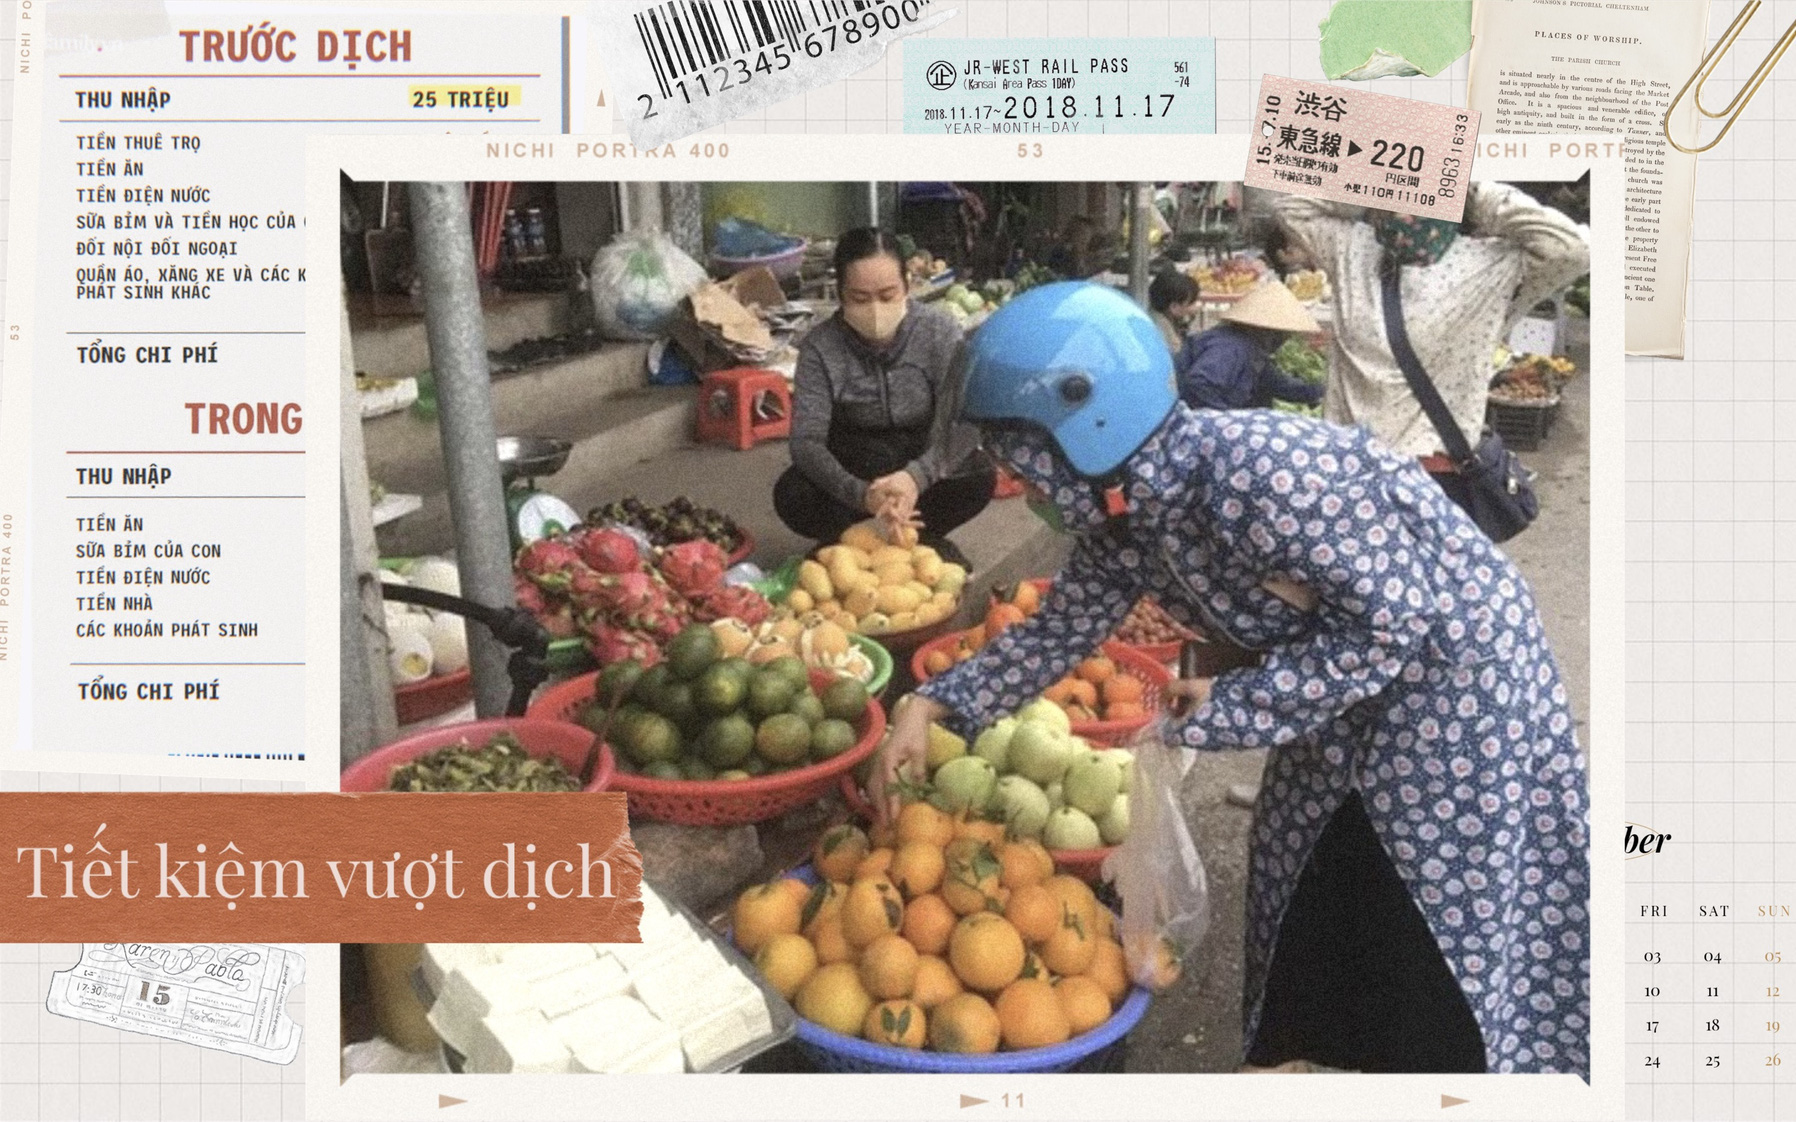 Nhờ nghiêm khắc trong chi tiêu, dù mất việc nhưng vợ chồng trẻ Ninh Bình vẫn sống ổn ở Thủ đô trong mùa dịch